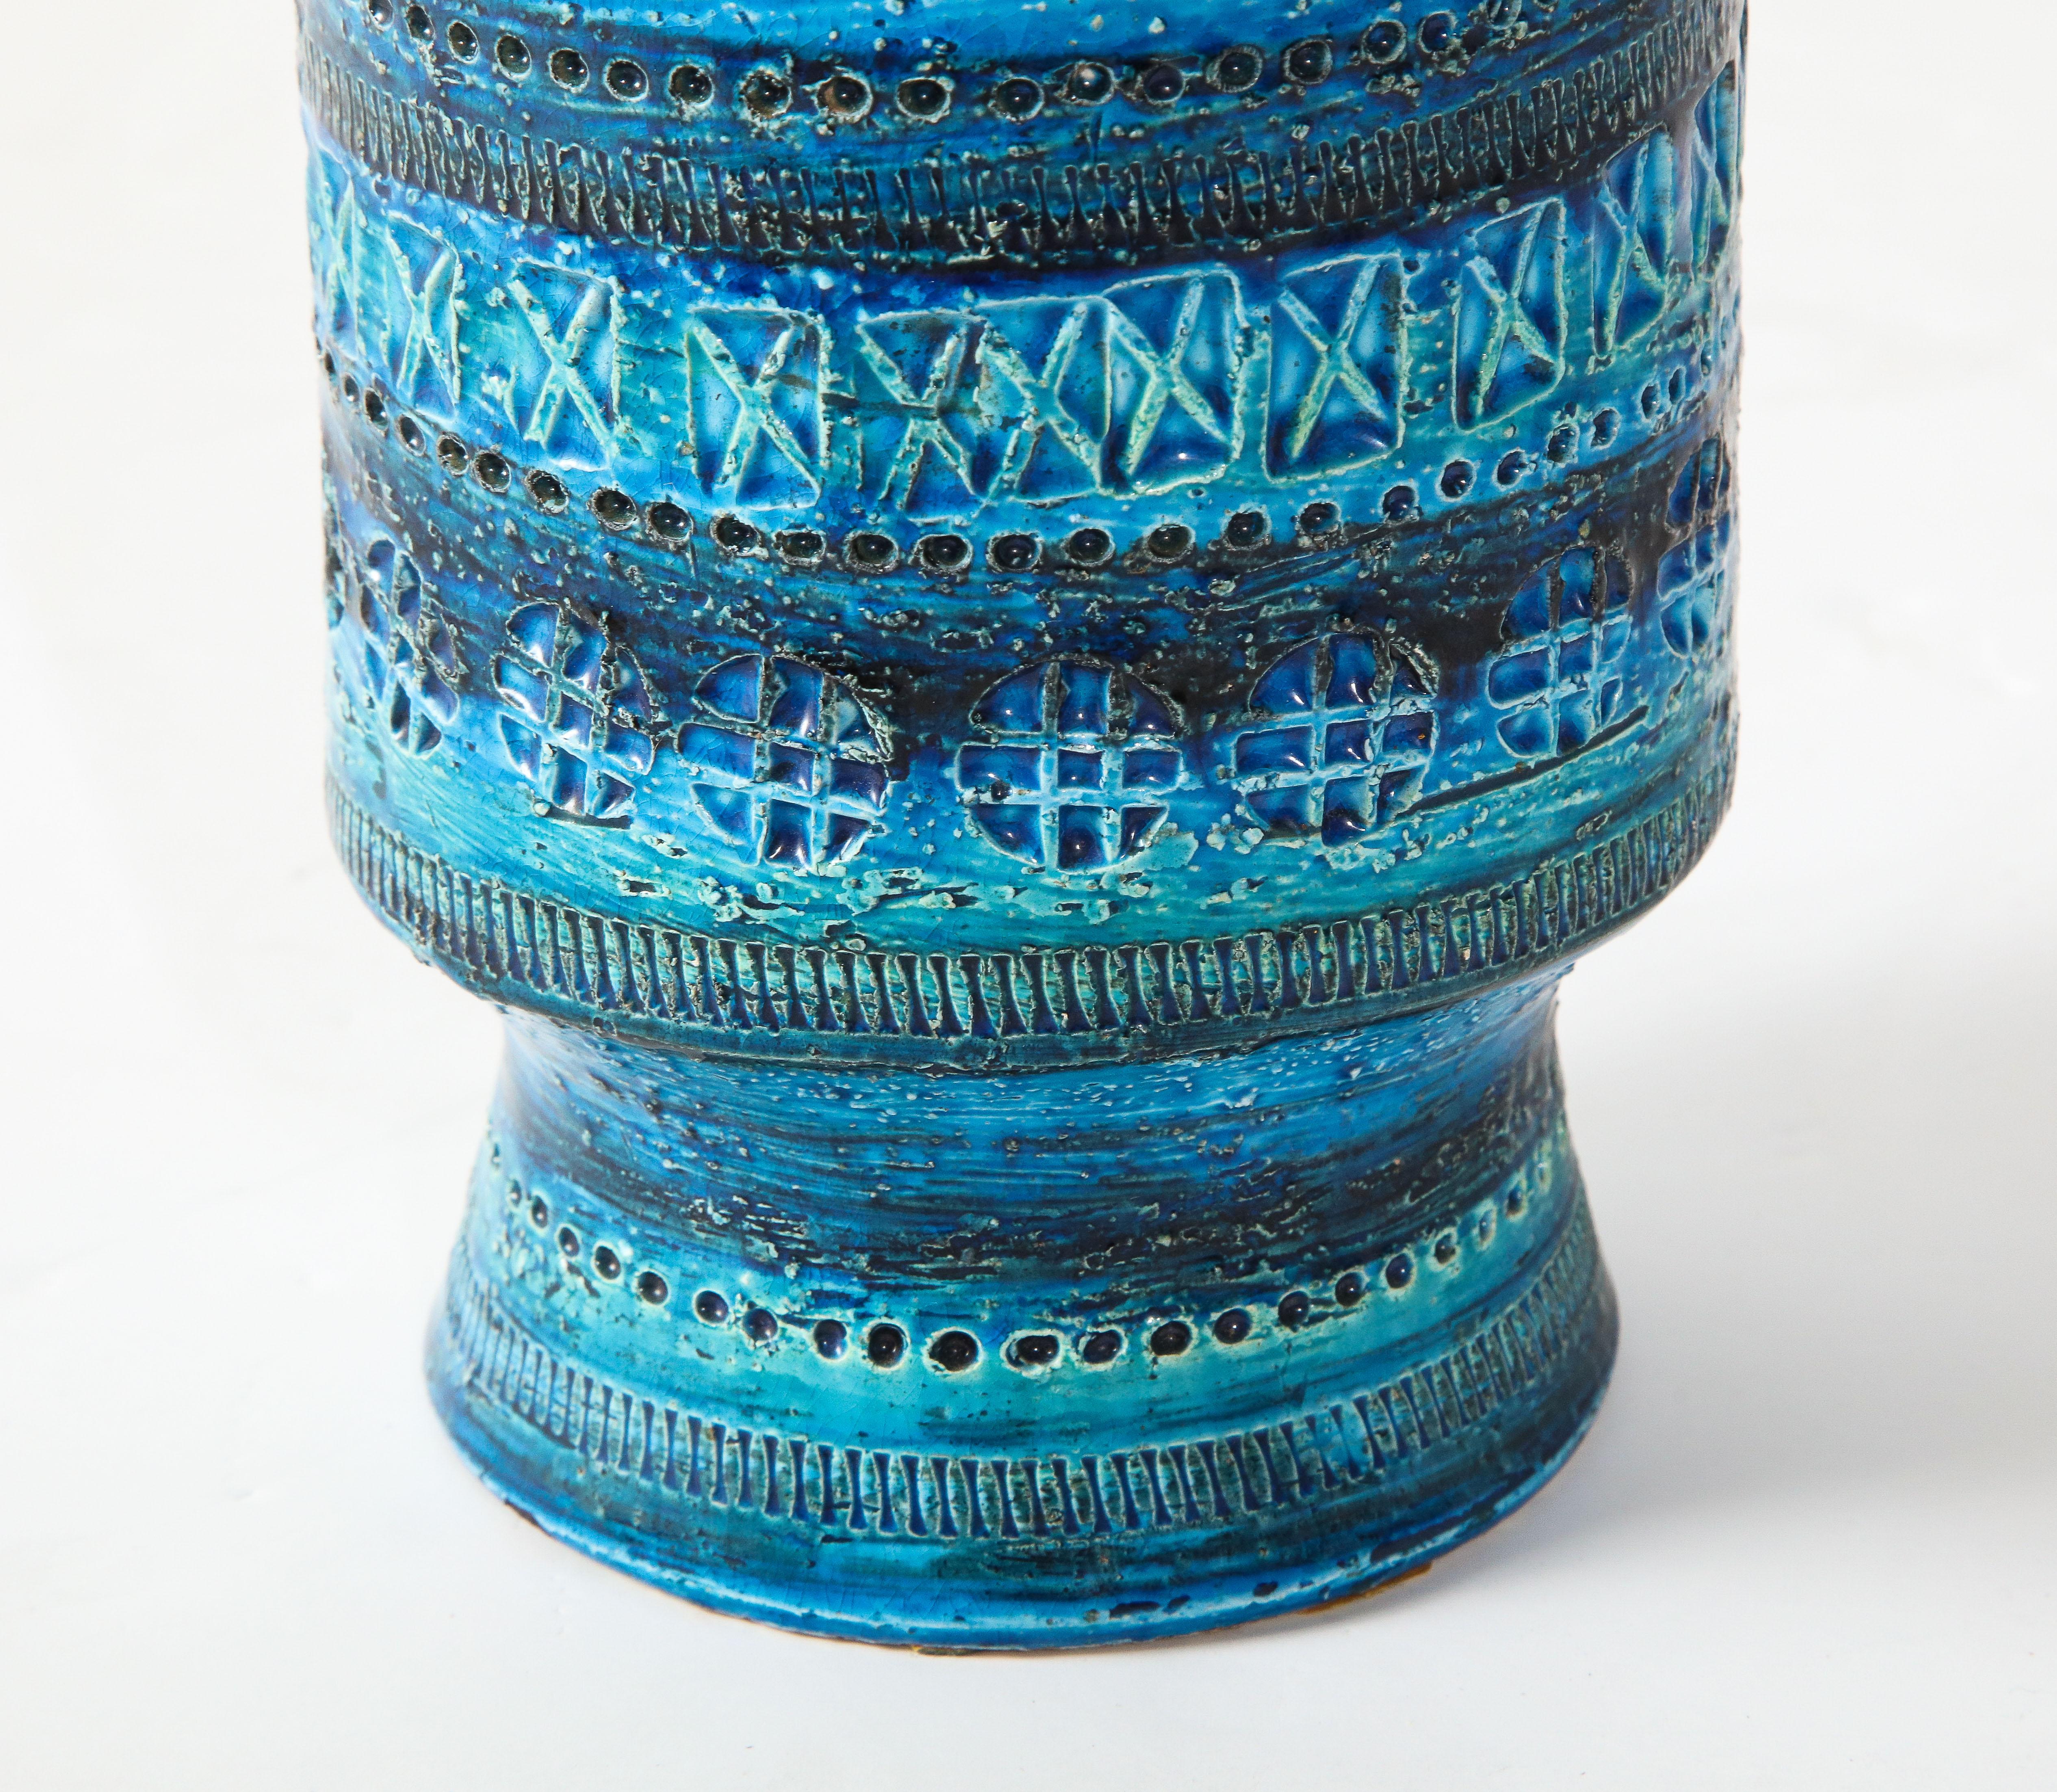 Hand-Crafted Bitossi, Ceramic Vase, Midcentury, Italy, Turquoise, circa 1950